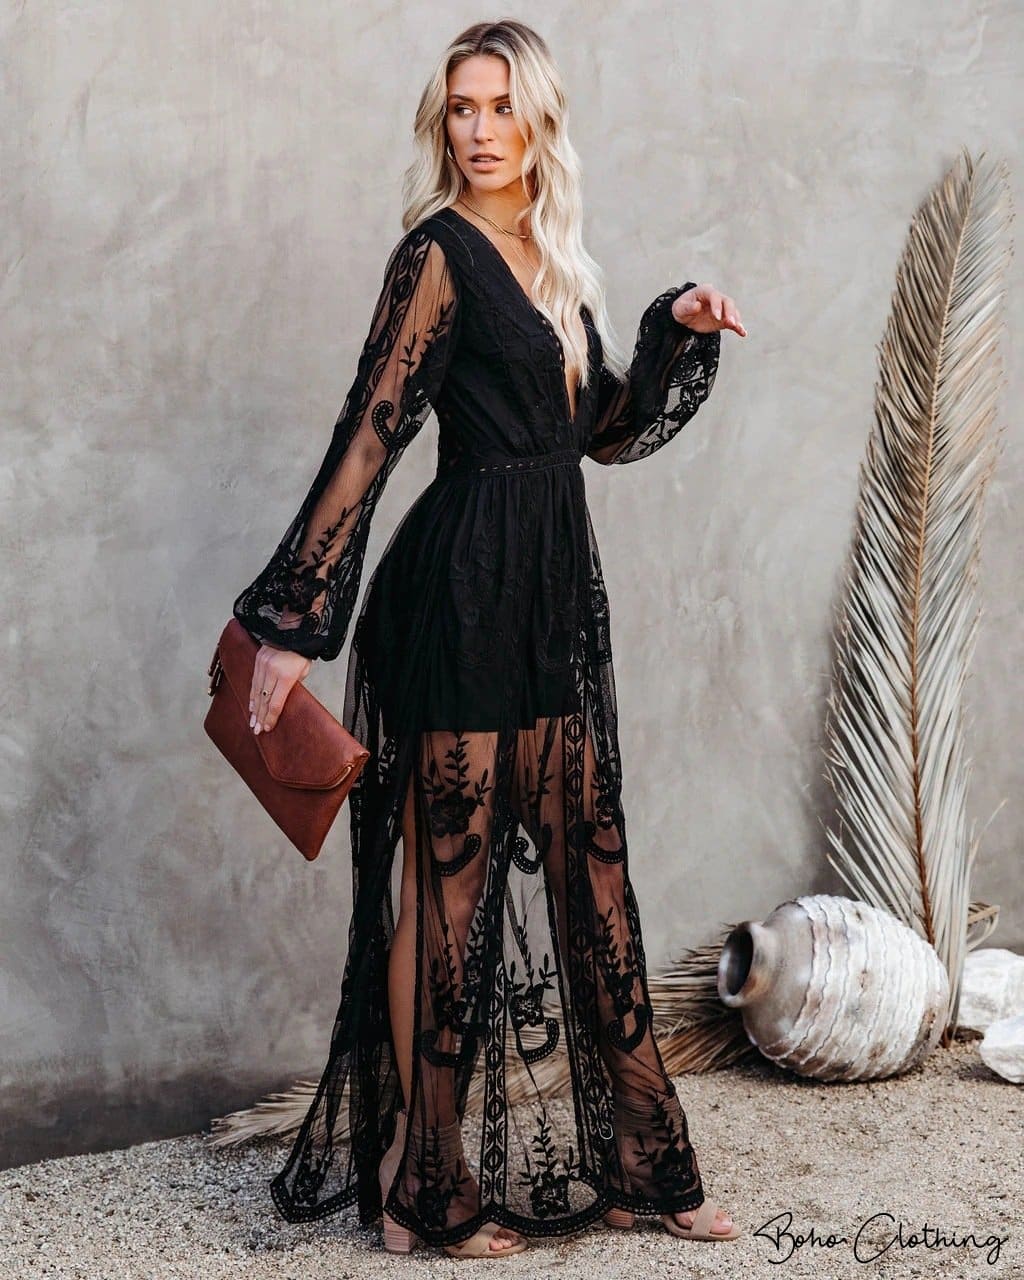 tetraeder Mary brugt Black Lace Boho Dress – Boho Clothing